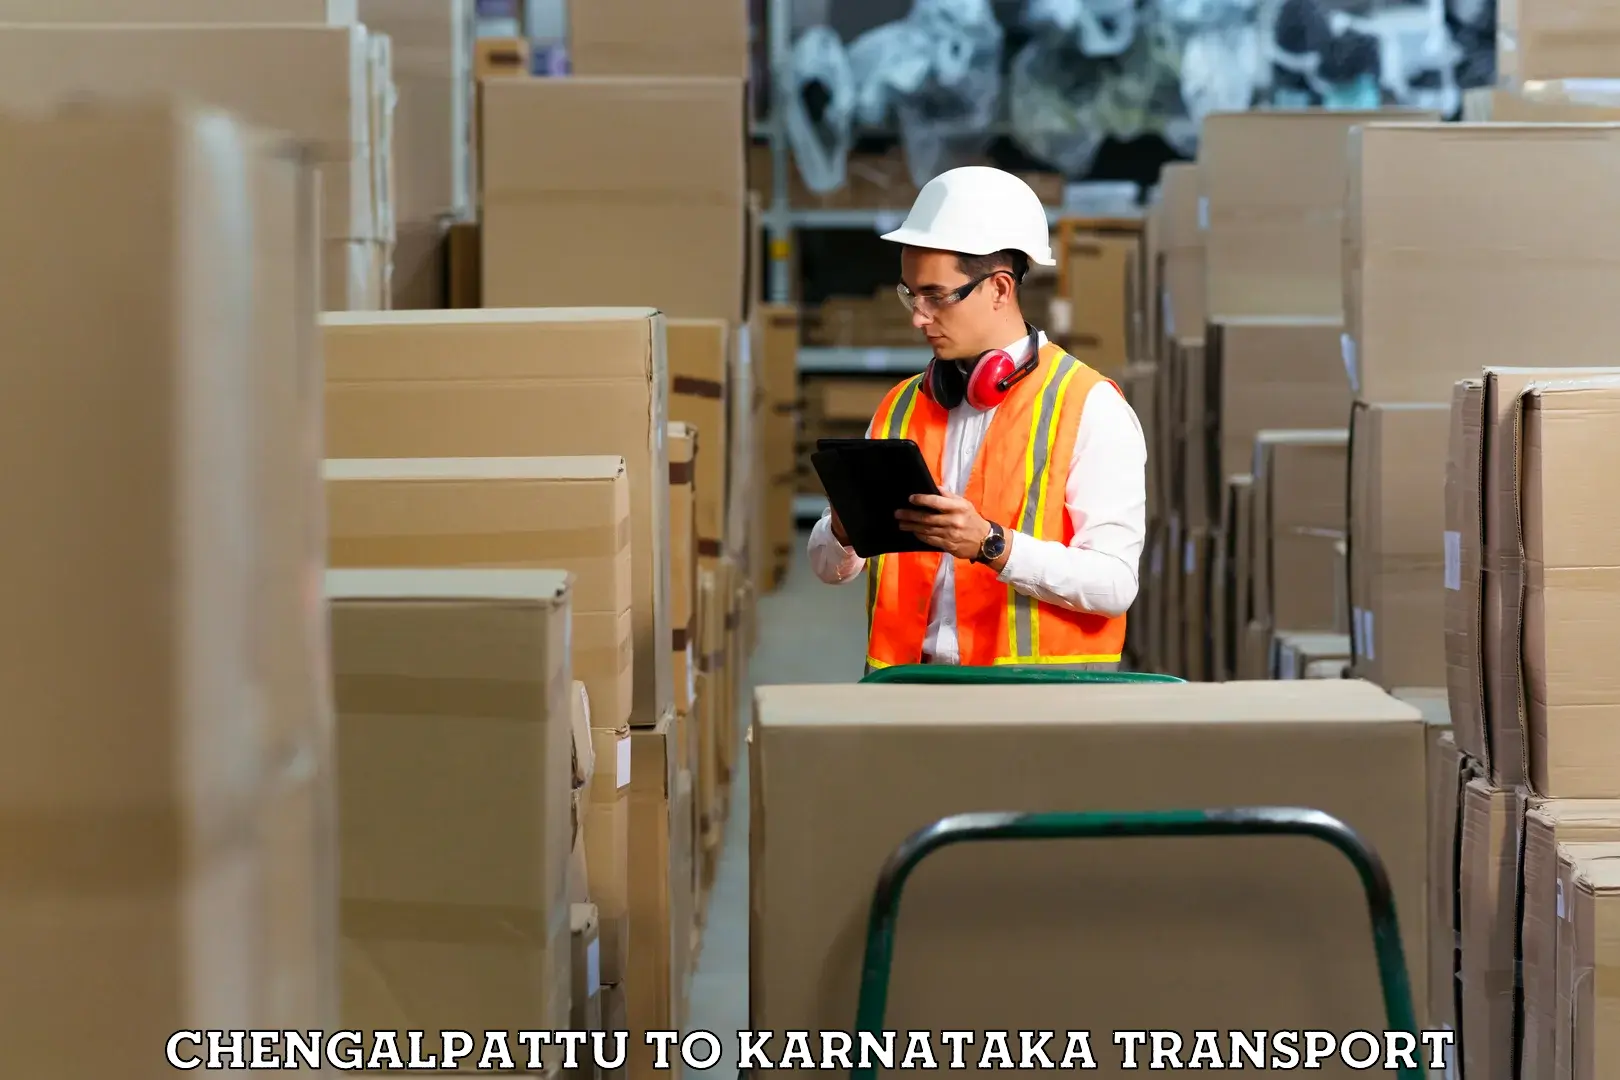 Transport in sharing Chengalpattu to Uttara Kannada